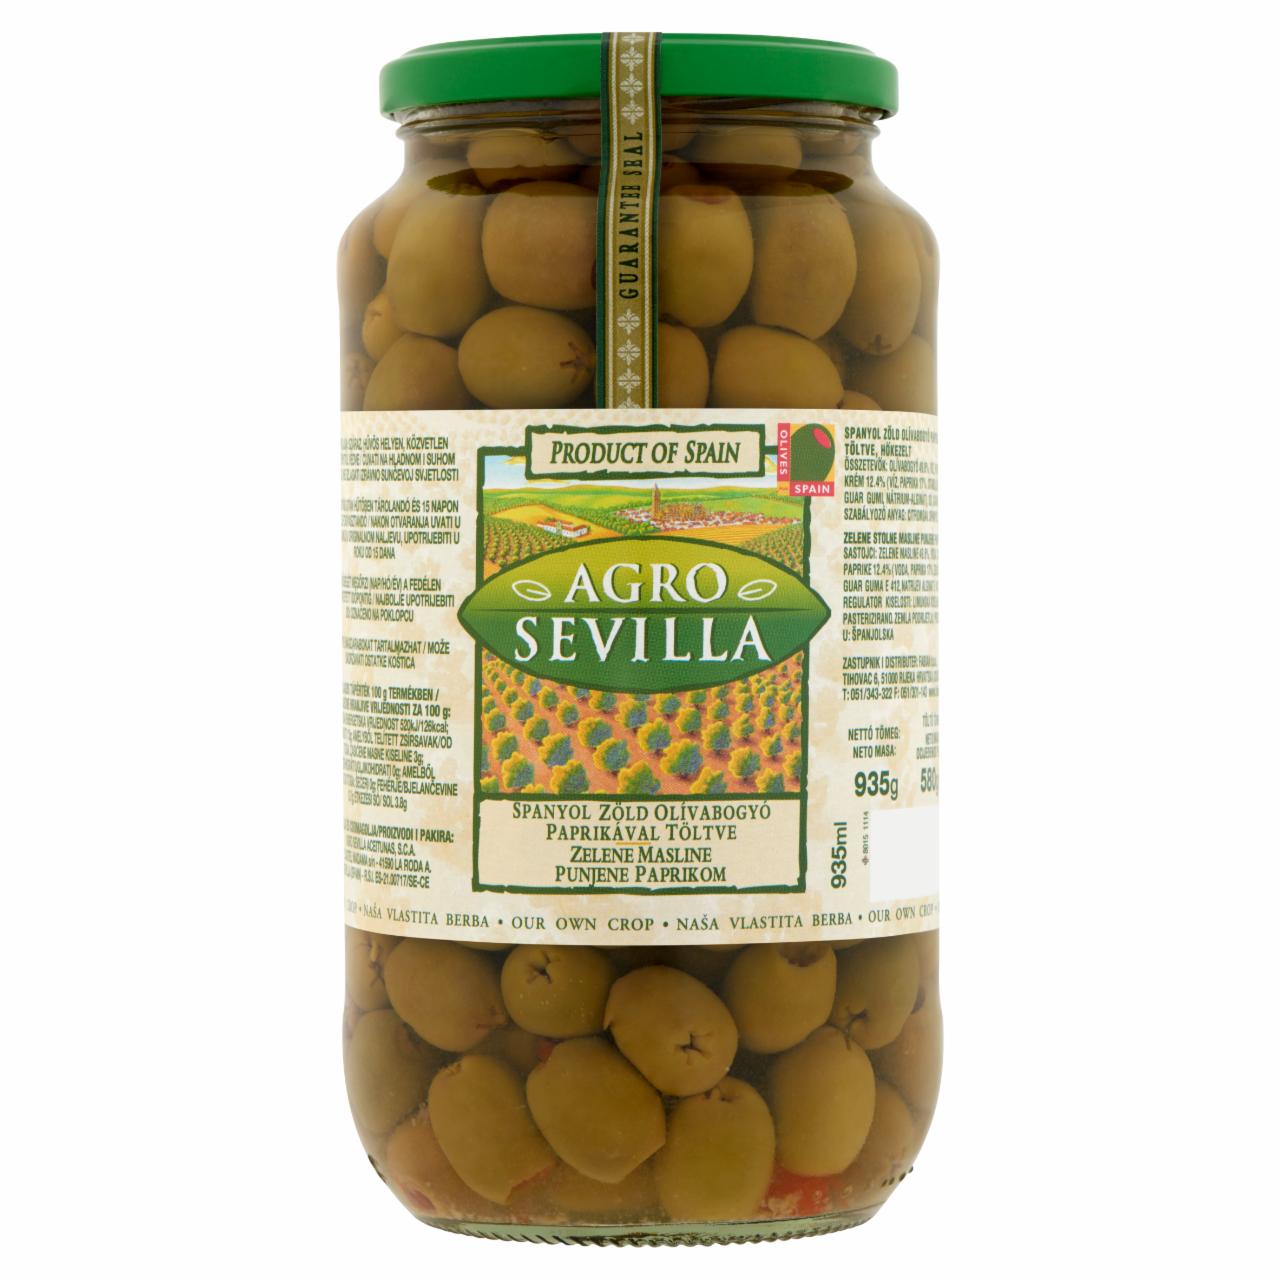 Képek - Agro Sevilla spanyol zöld olívabogyó paprikával töltve 935 g